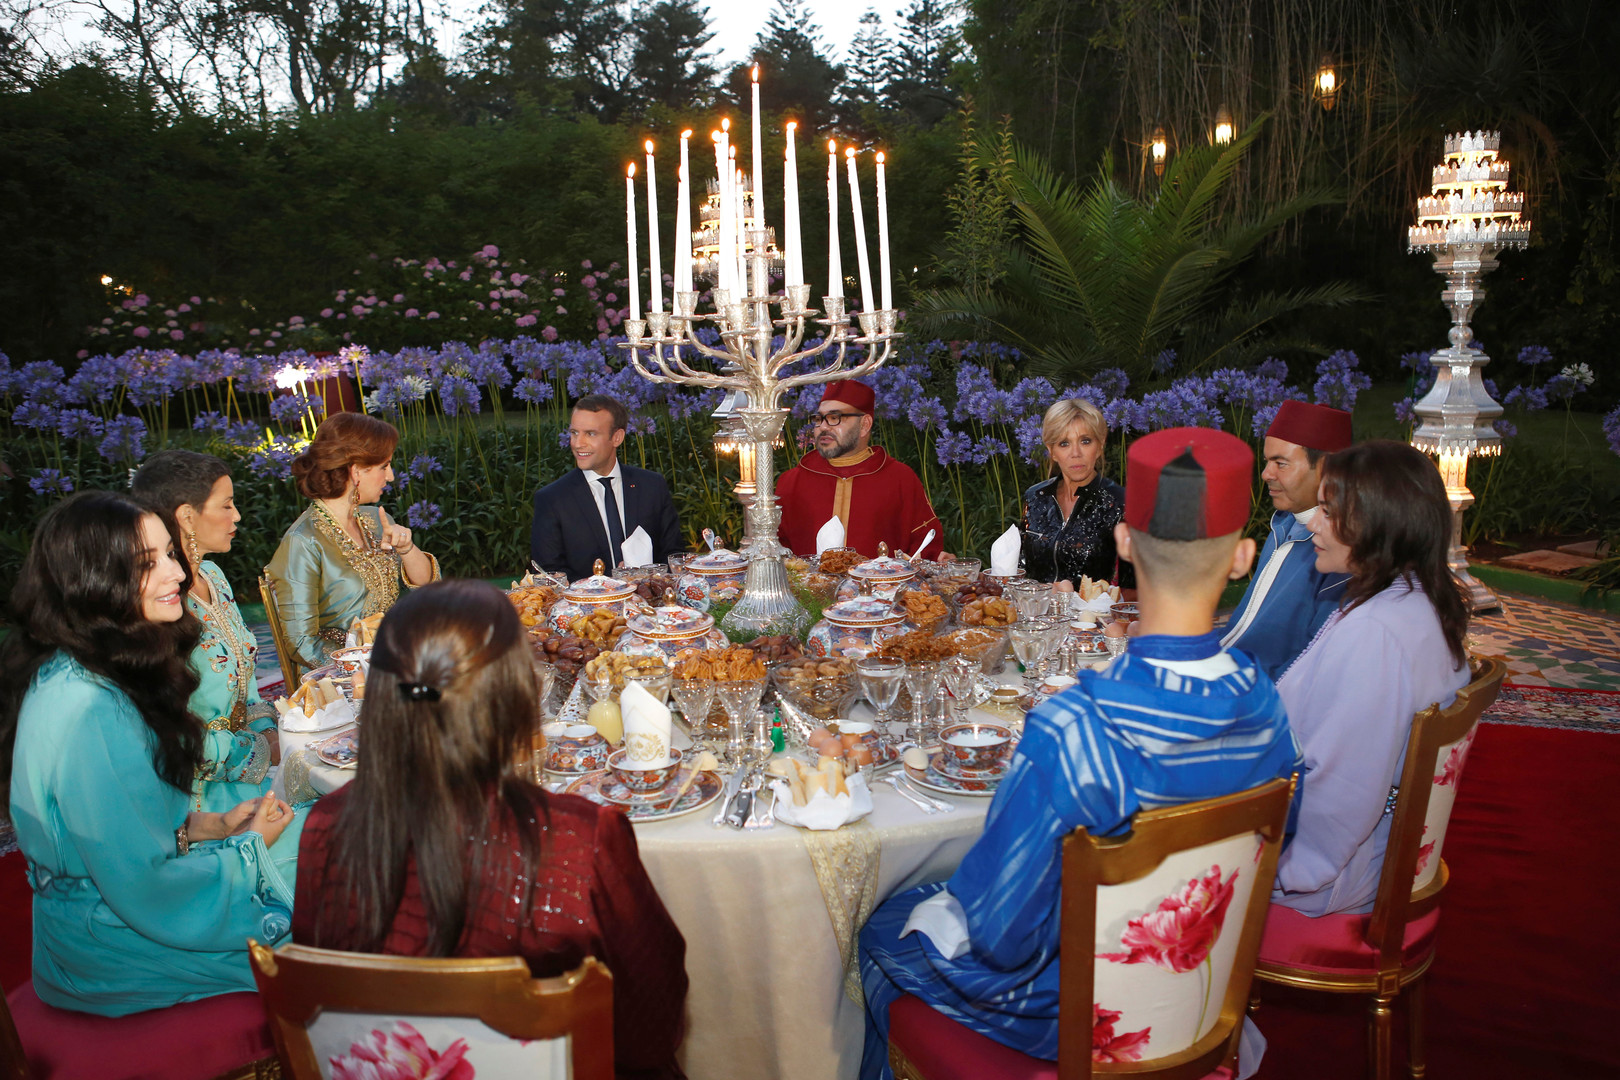 الرئيس الفرنسي إيمانويل ماكرون يشيد بمائدة الفطور مع الملك